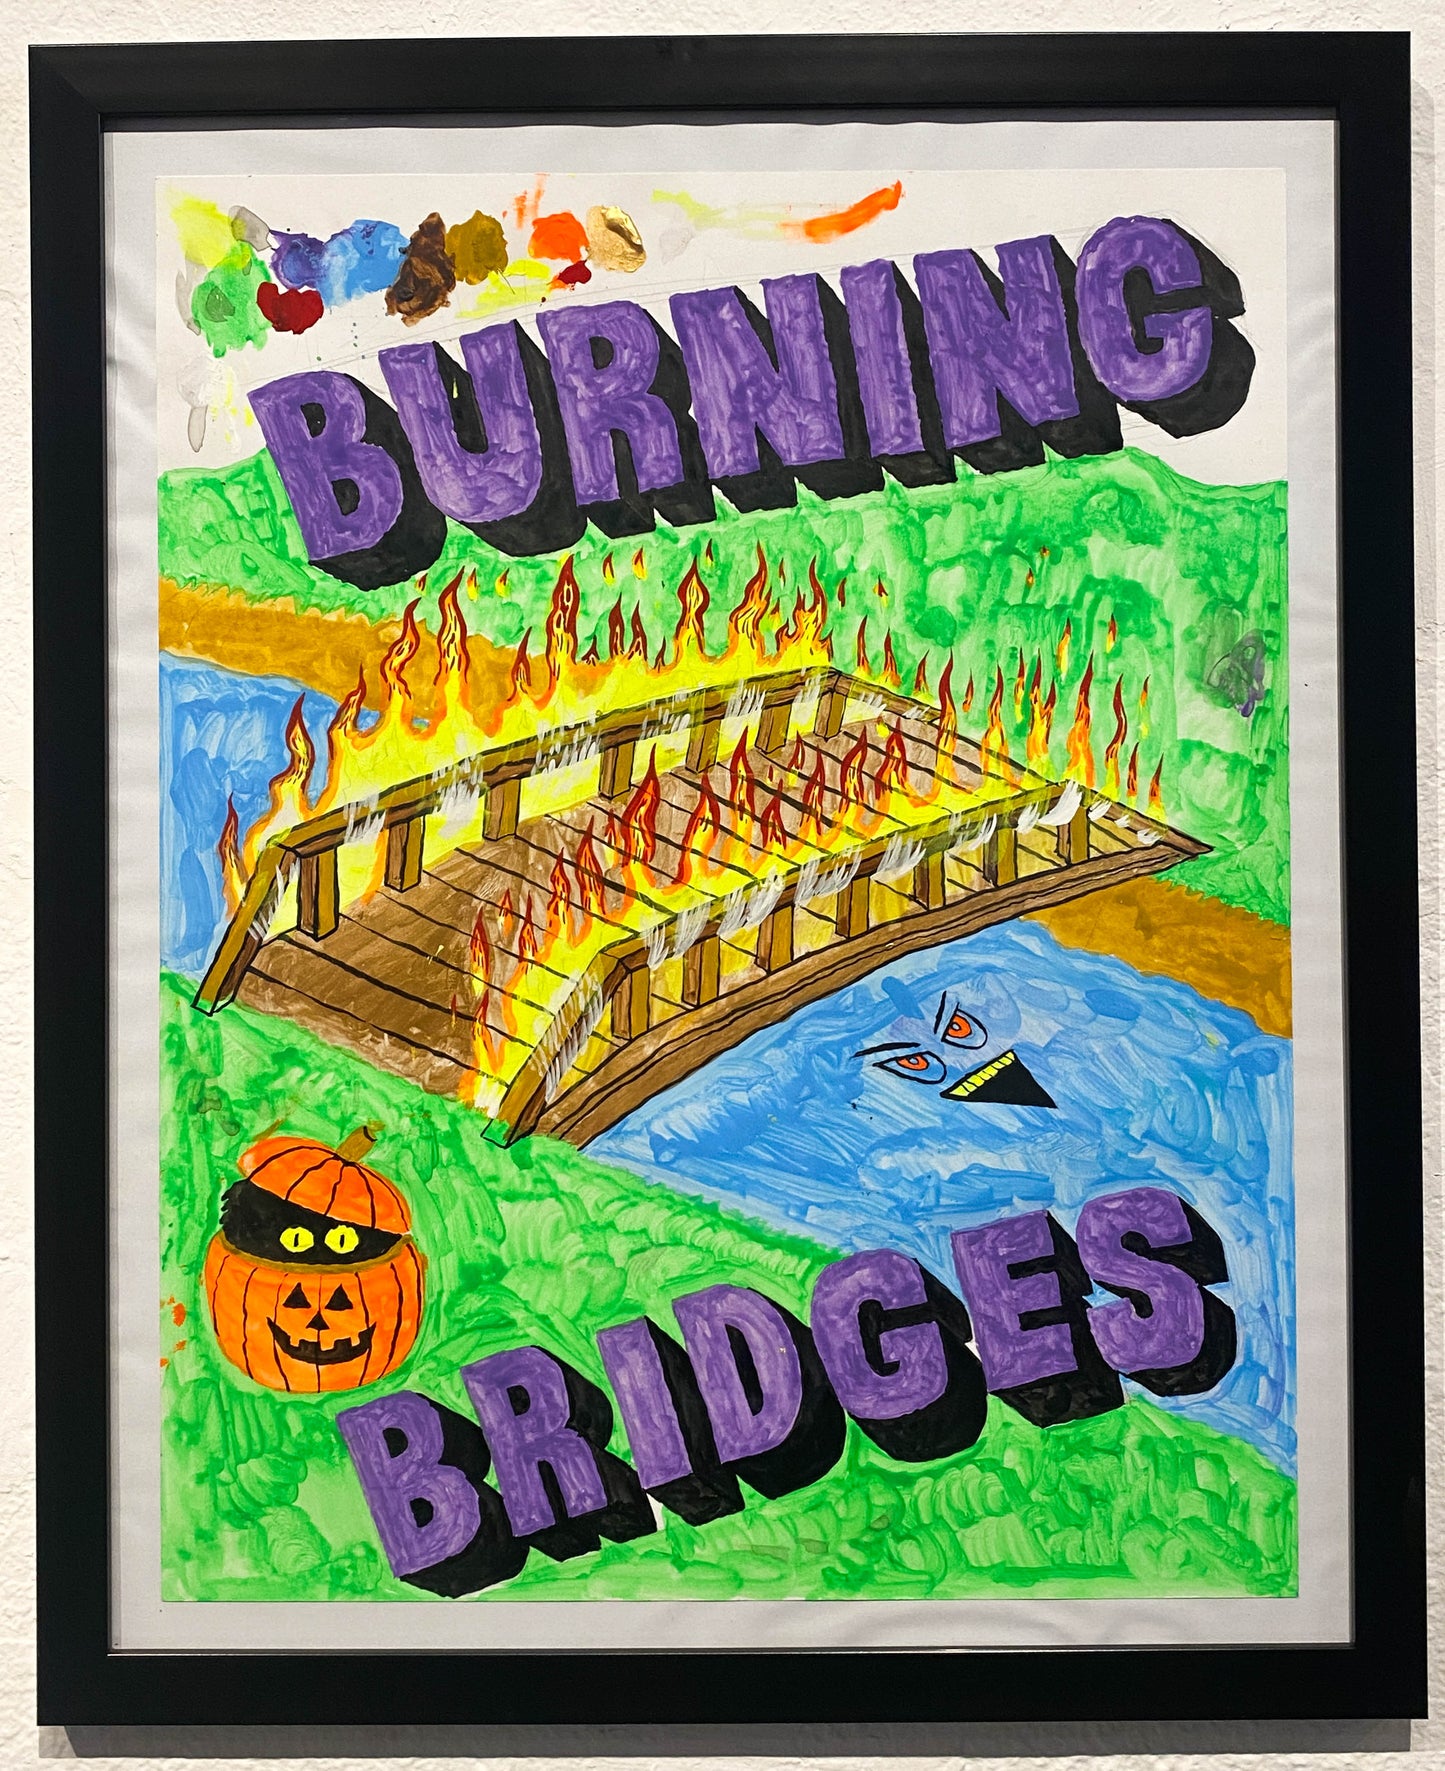 JJ Villard - Burning Bridges